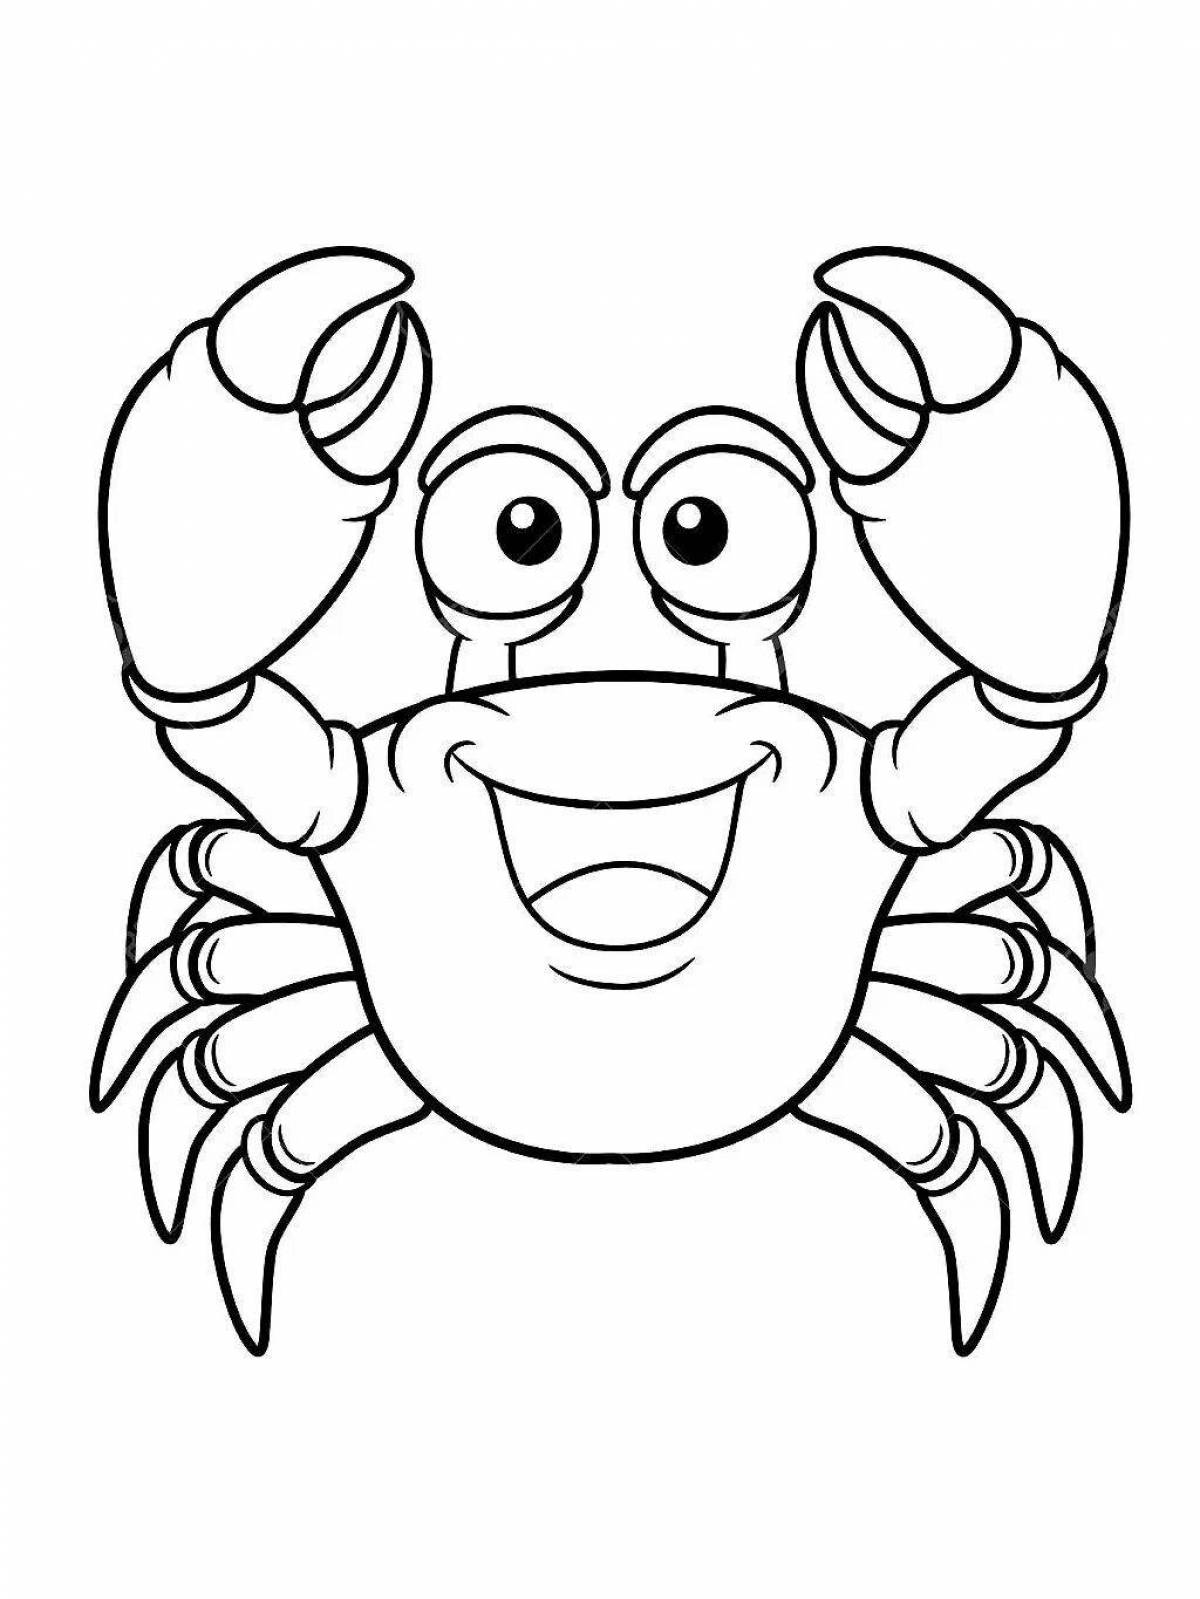 Fun coloring crab